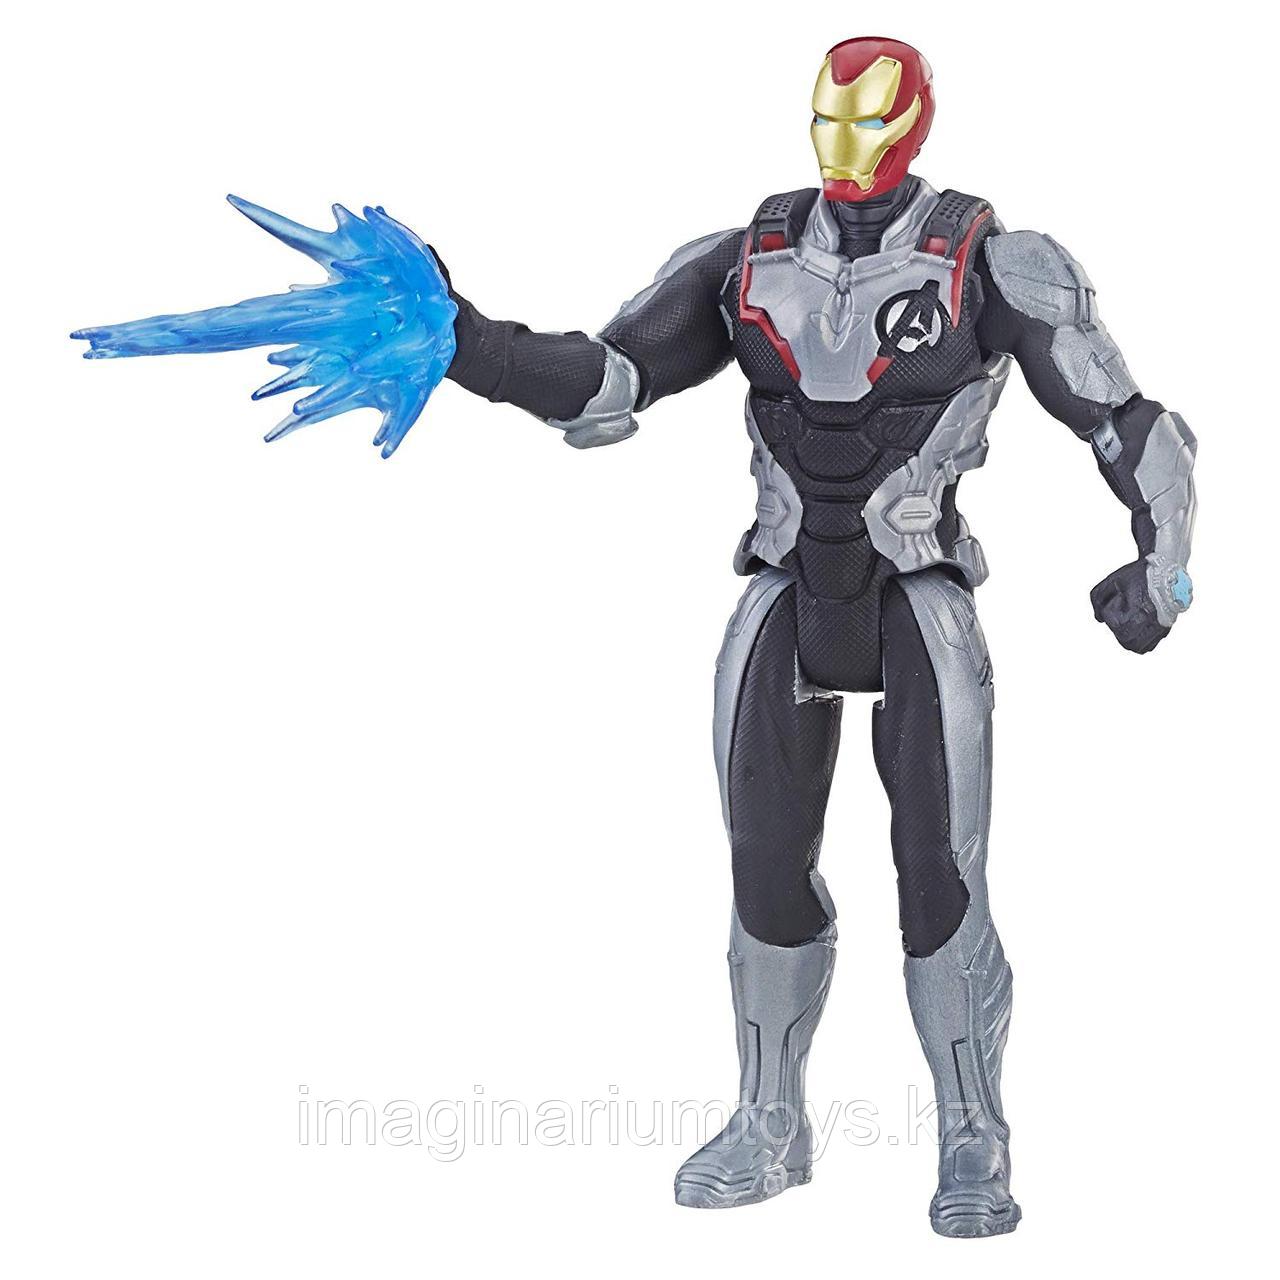 Железный Человек фигурка из к/ф «Мстители. Финал» 15 см